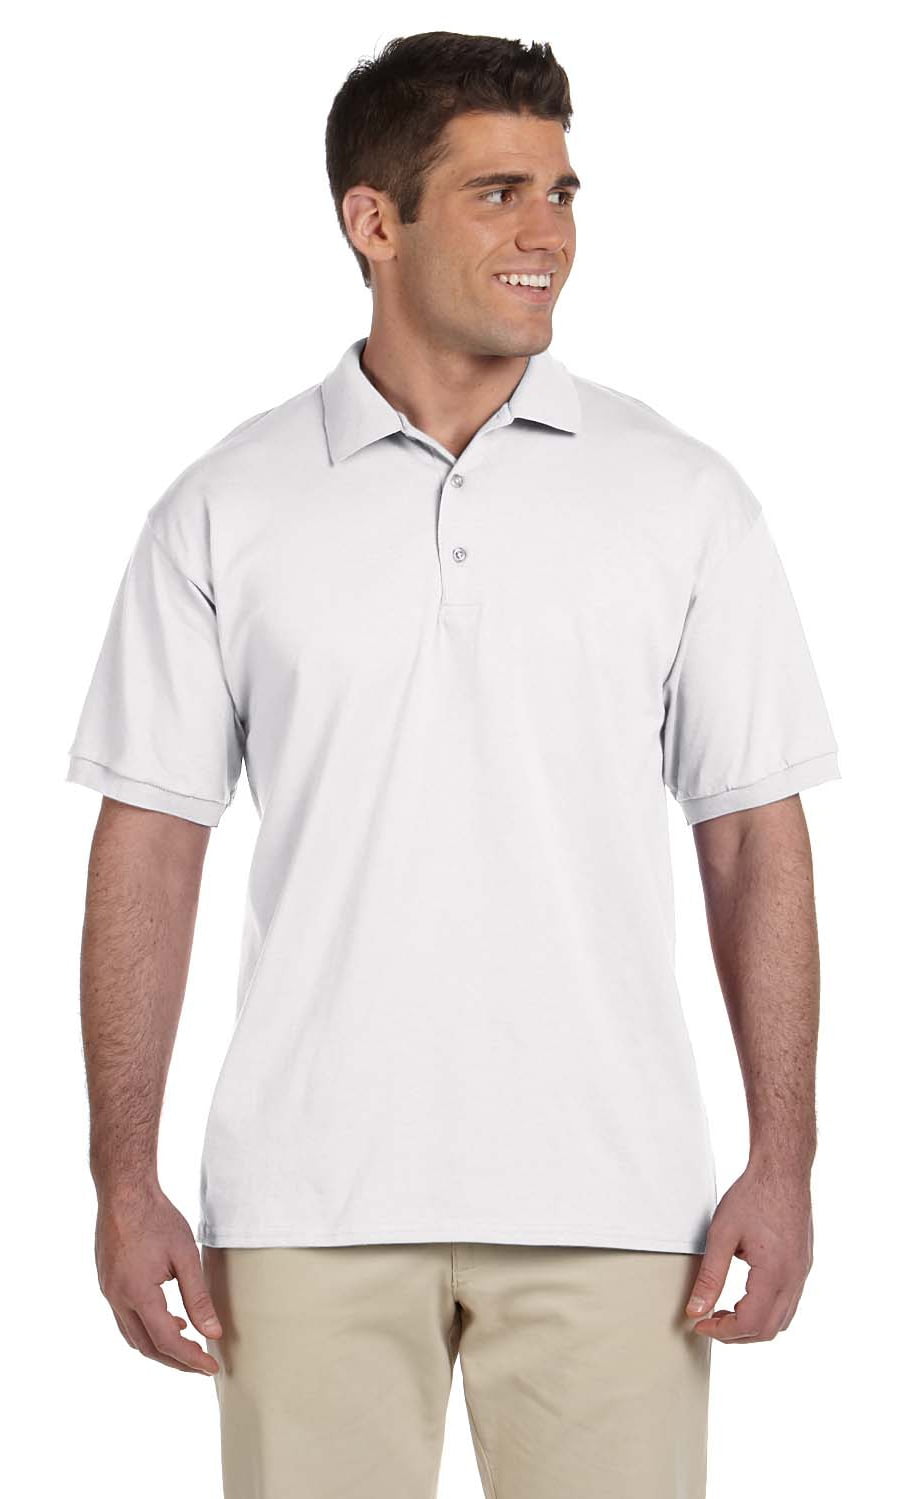 Gildan DryBlend Kids Jersey Poloshirt Short Sleeve Soft Cotton Plain Casual TOP 